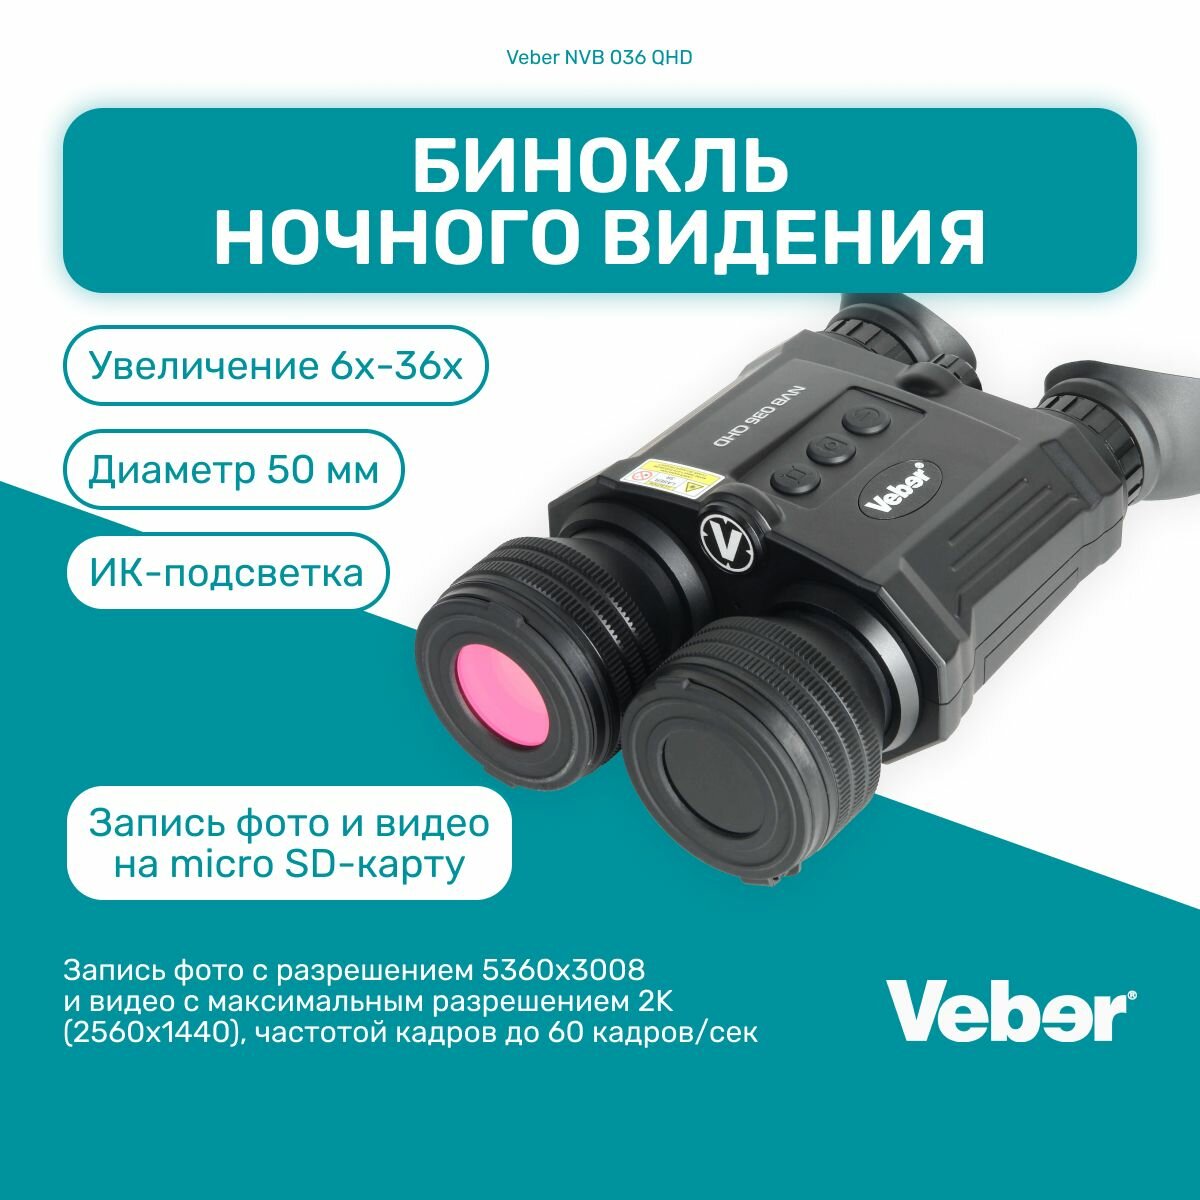 Бинокль ночного видения Veber NVB 036 QHD цифровой